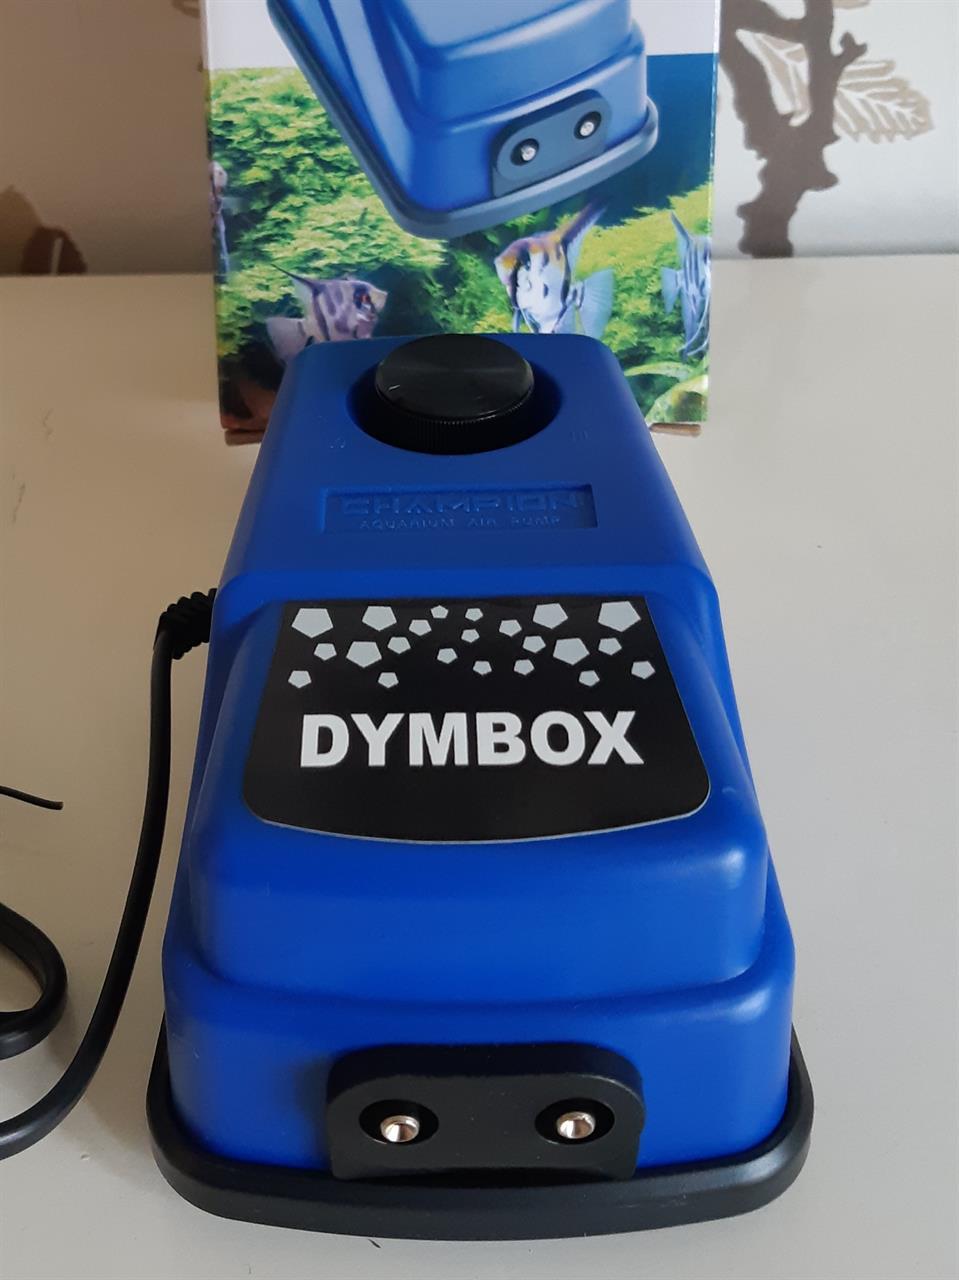 DYMBOX Luftpump för rökgeneratorer. Inkl. svensk bruksanvisning, service och garanti.